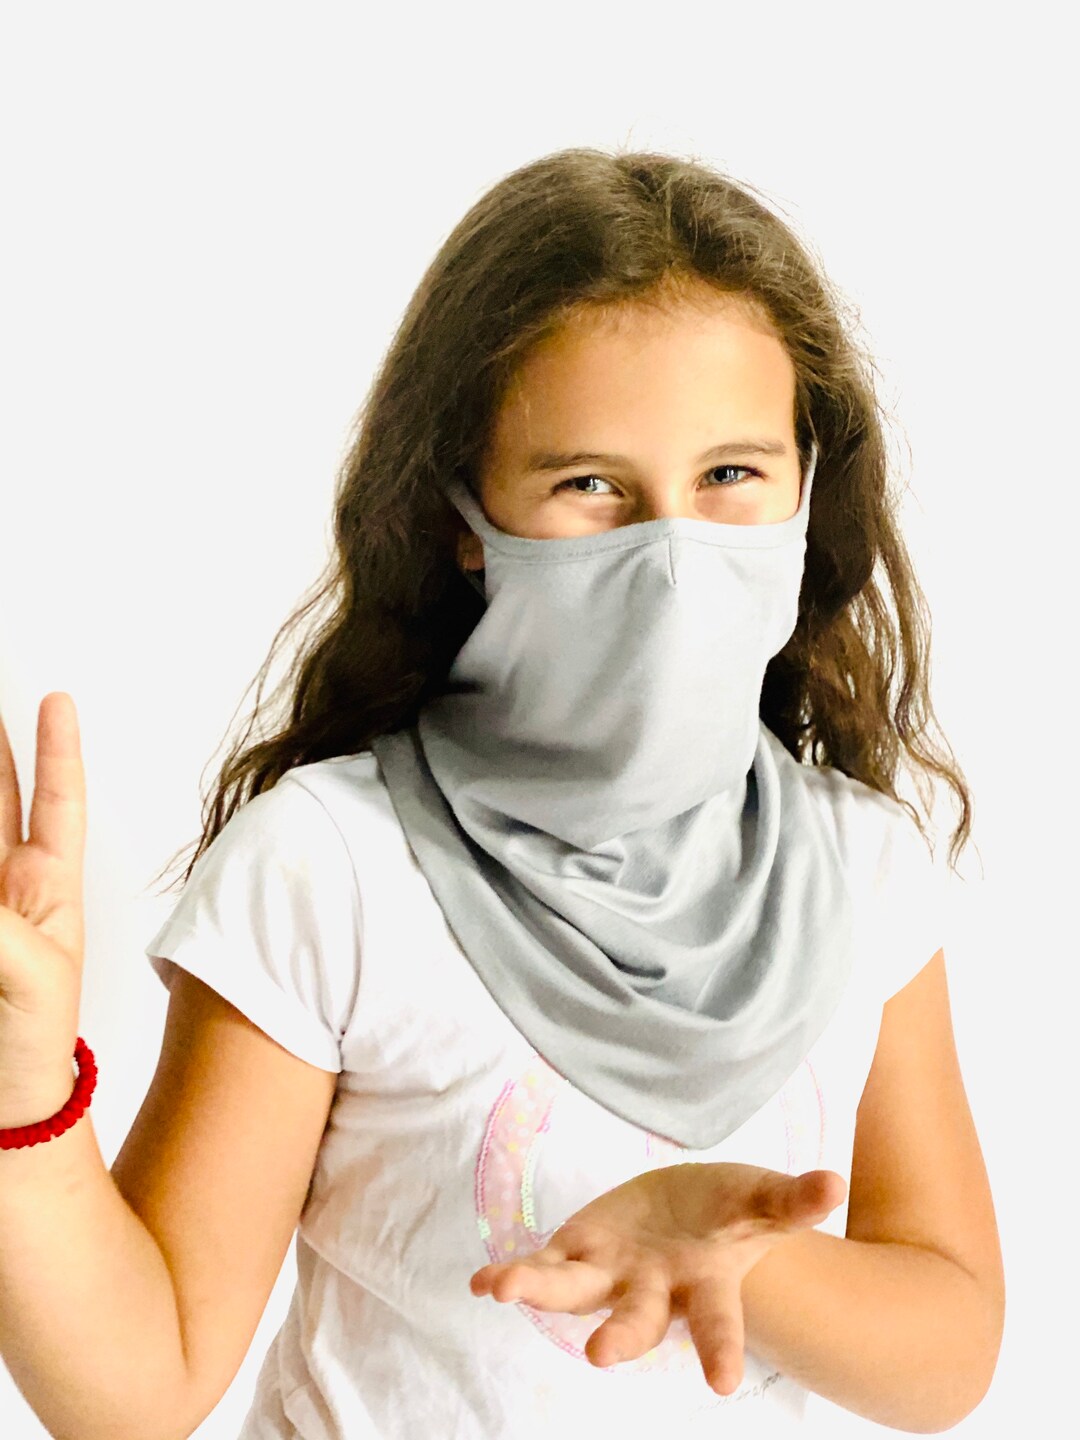 Kids Face Mask Washabe Cotton Scarf neck Gaiter fashion - Etsy